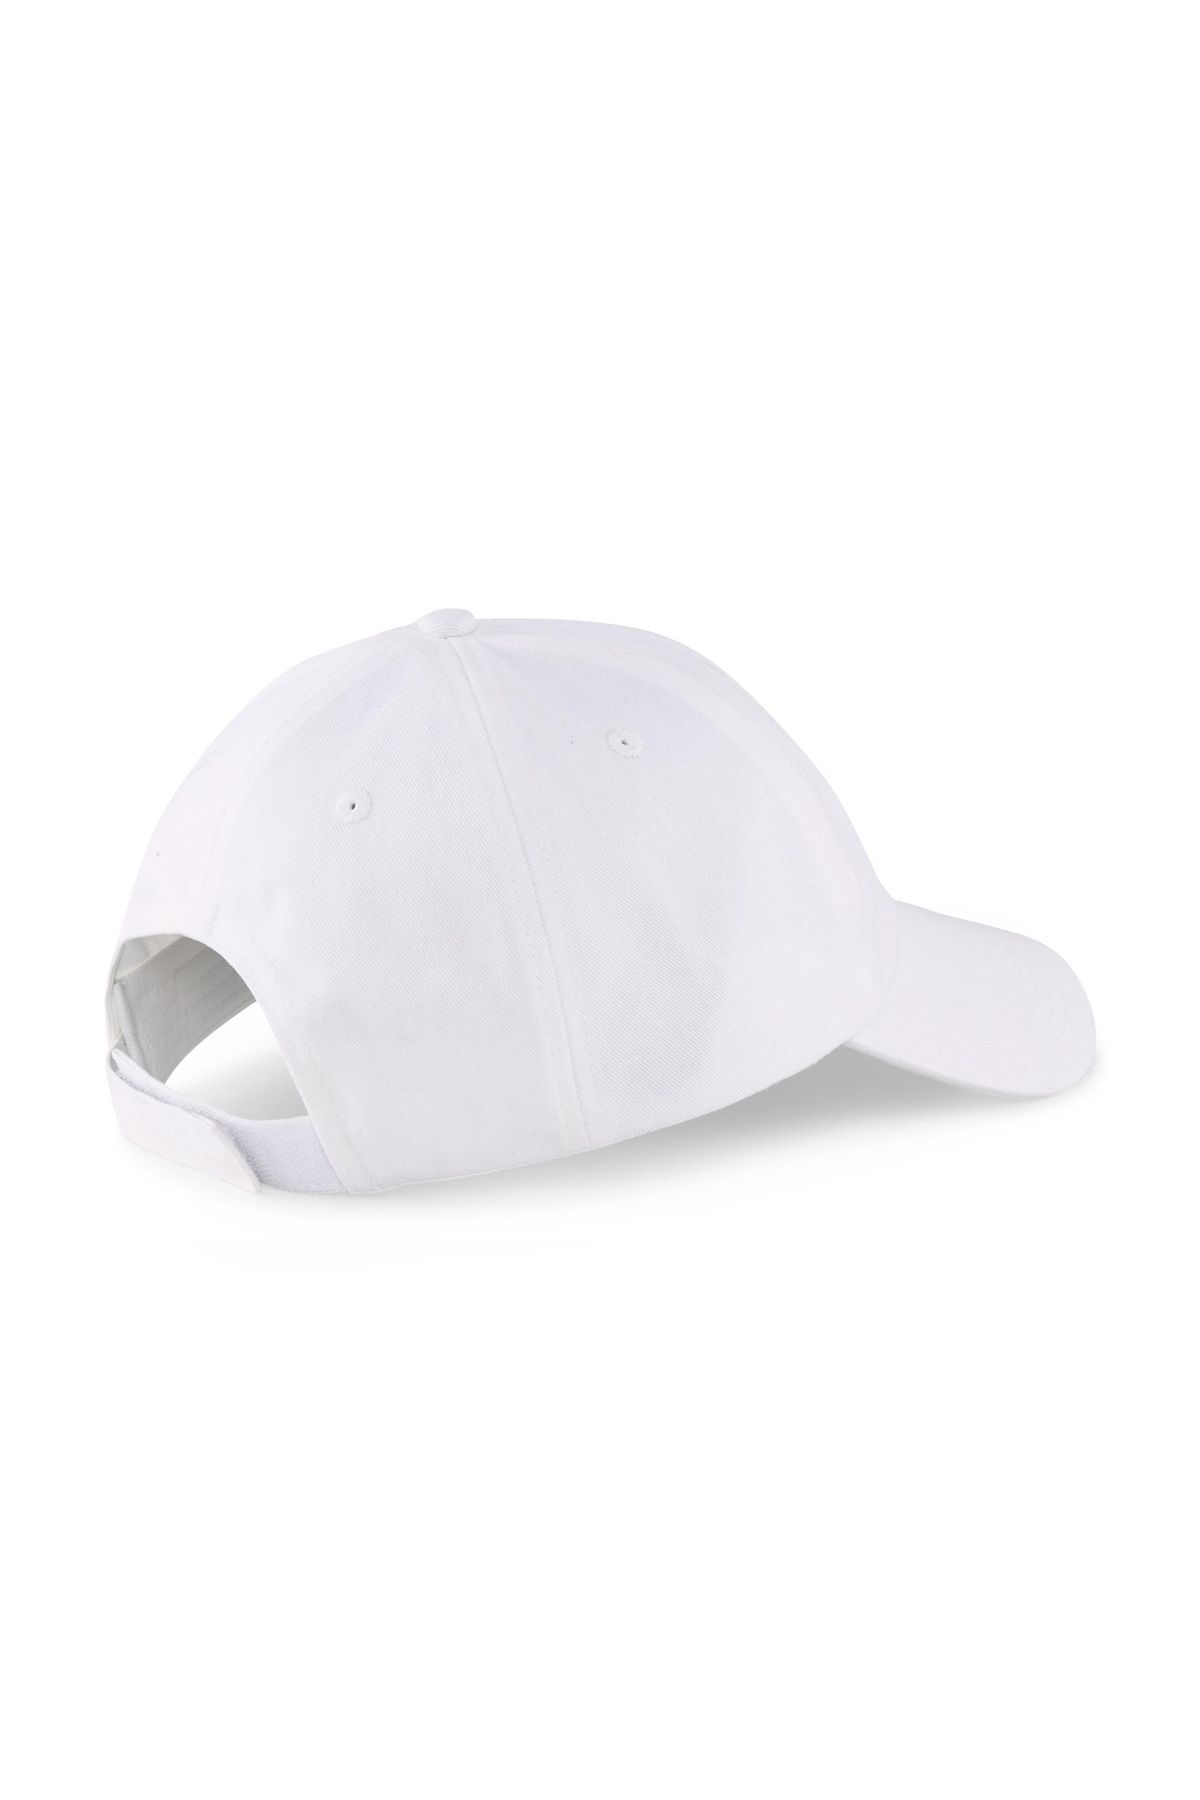 Puma Ess Cap III Hat 2366902 White